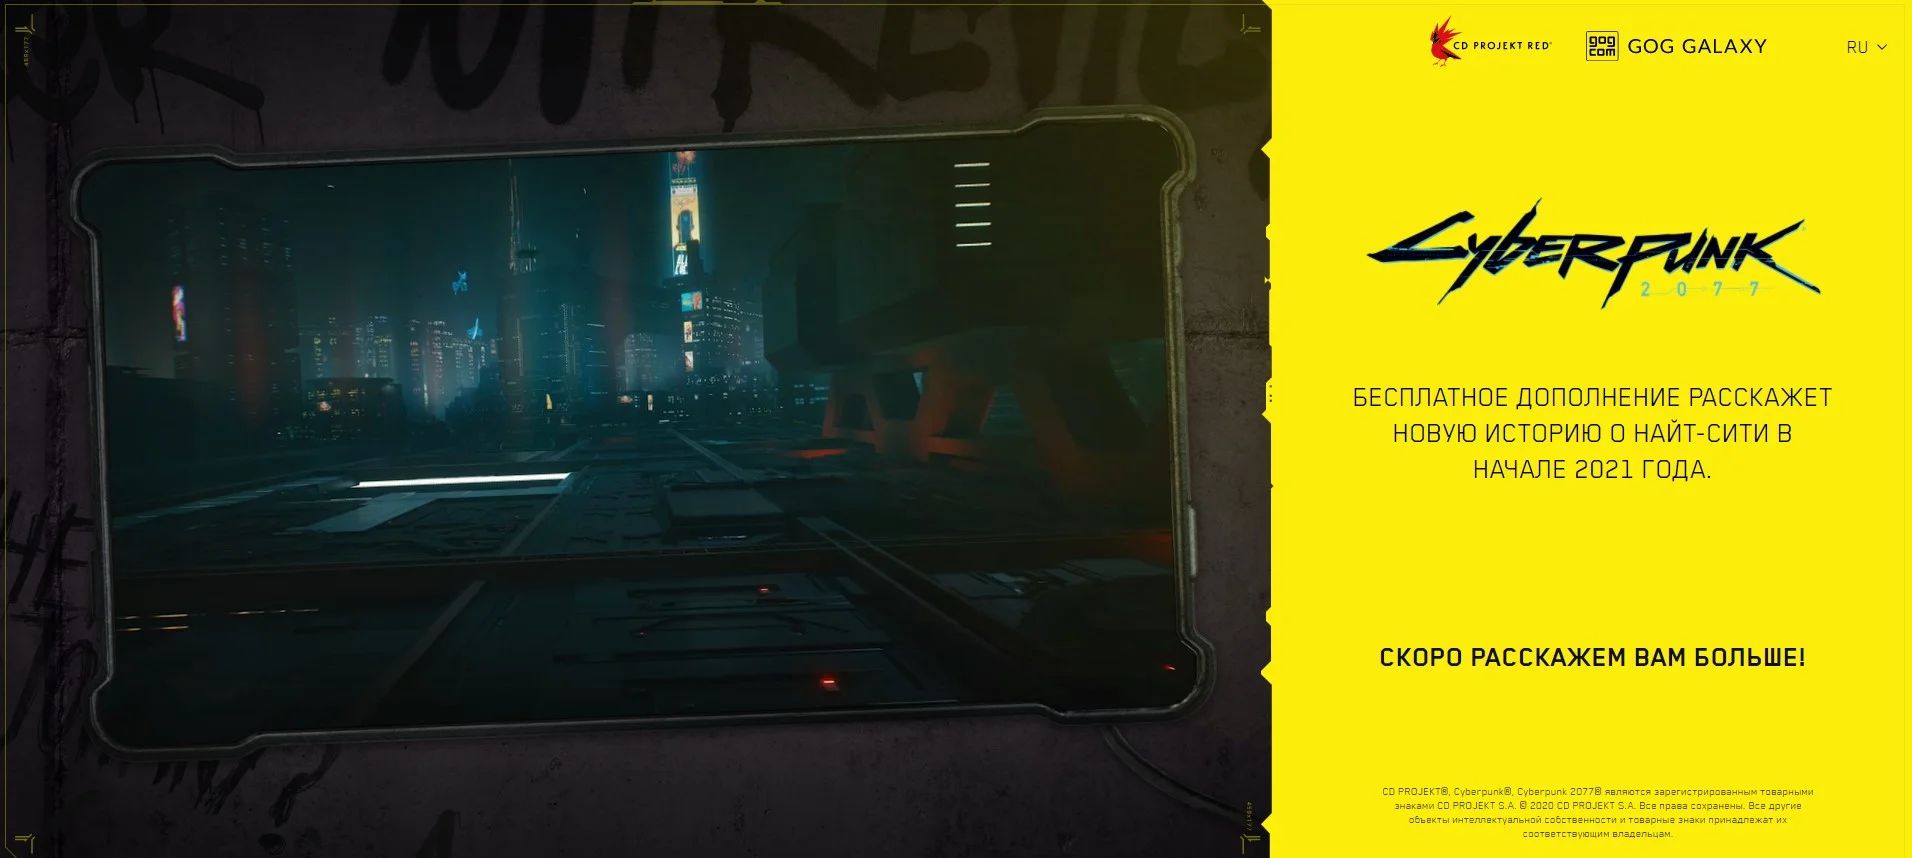 Официальный сайт Cyberpunk 2077 получил раздел с DLC. Первое дополнение выйдет в начале 2021 года - фото 1